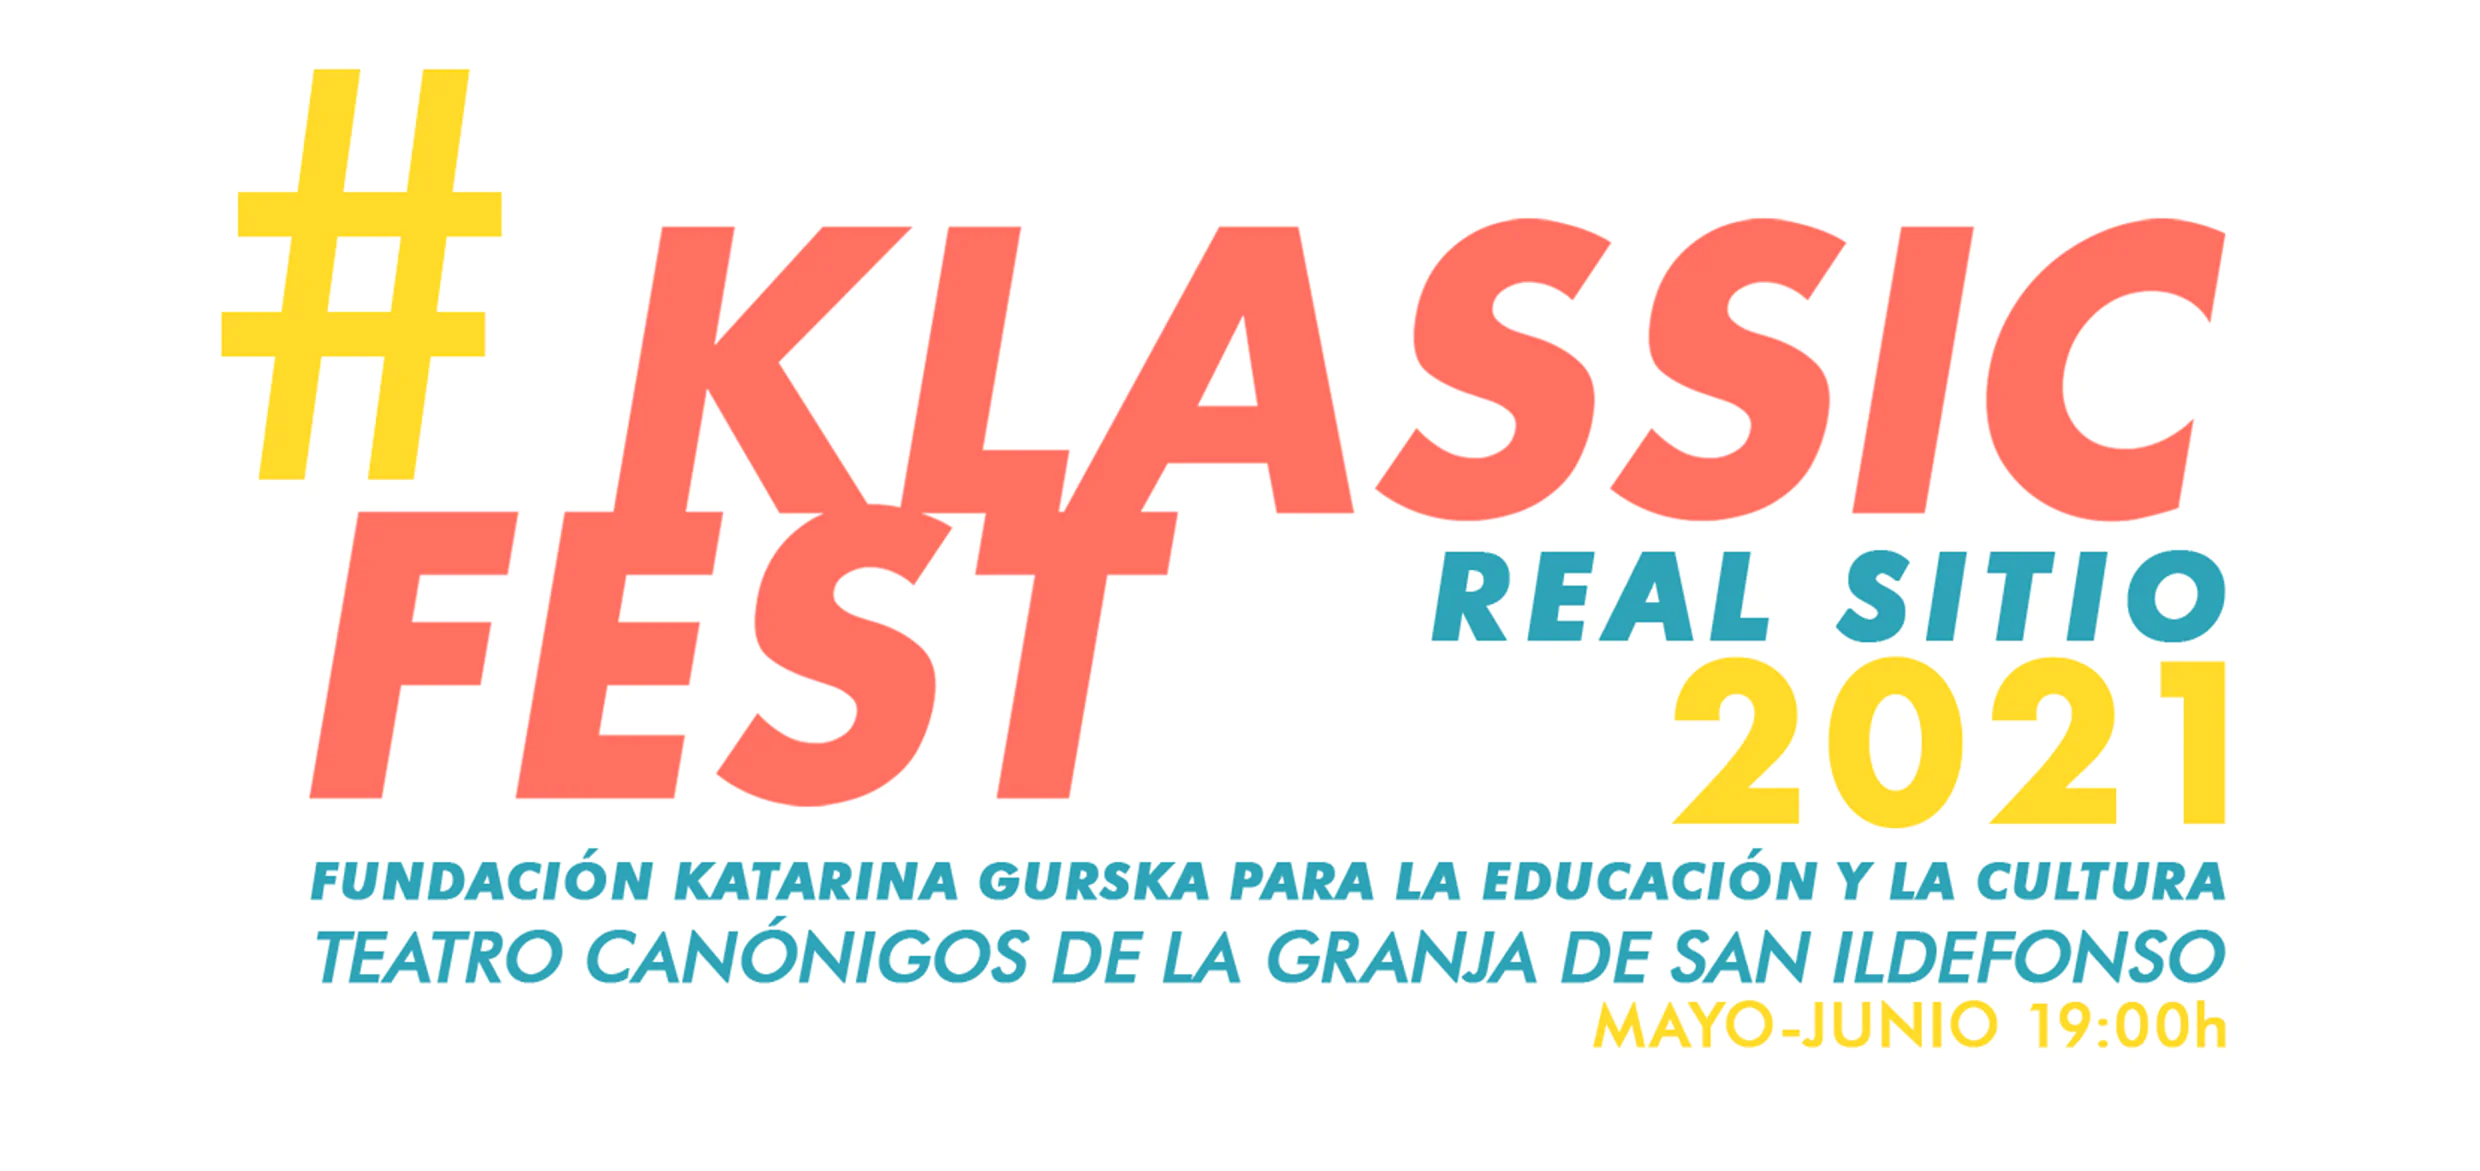 Recital #Klassicfest Real Sitio